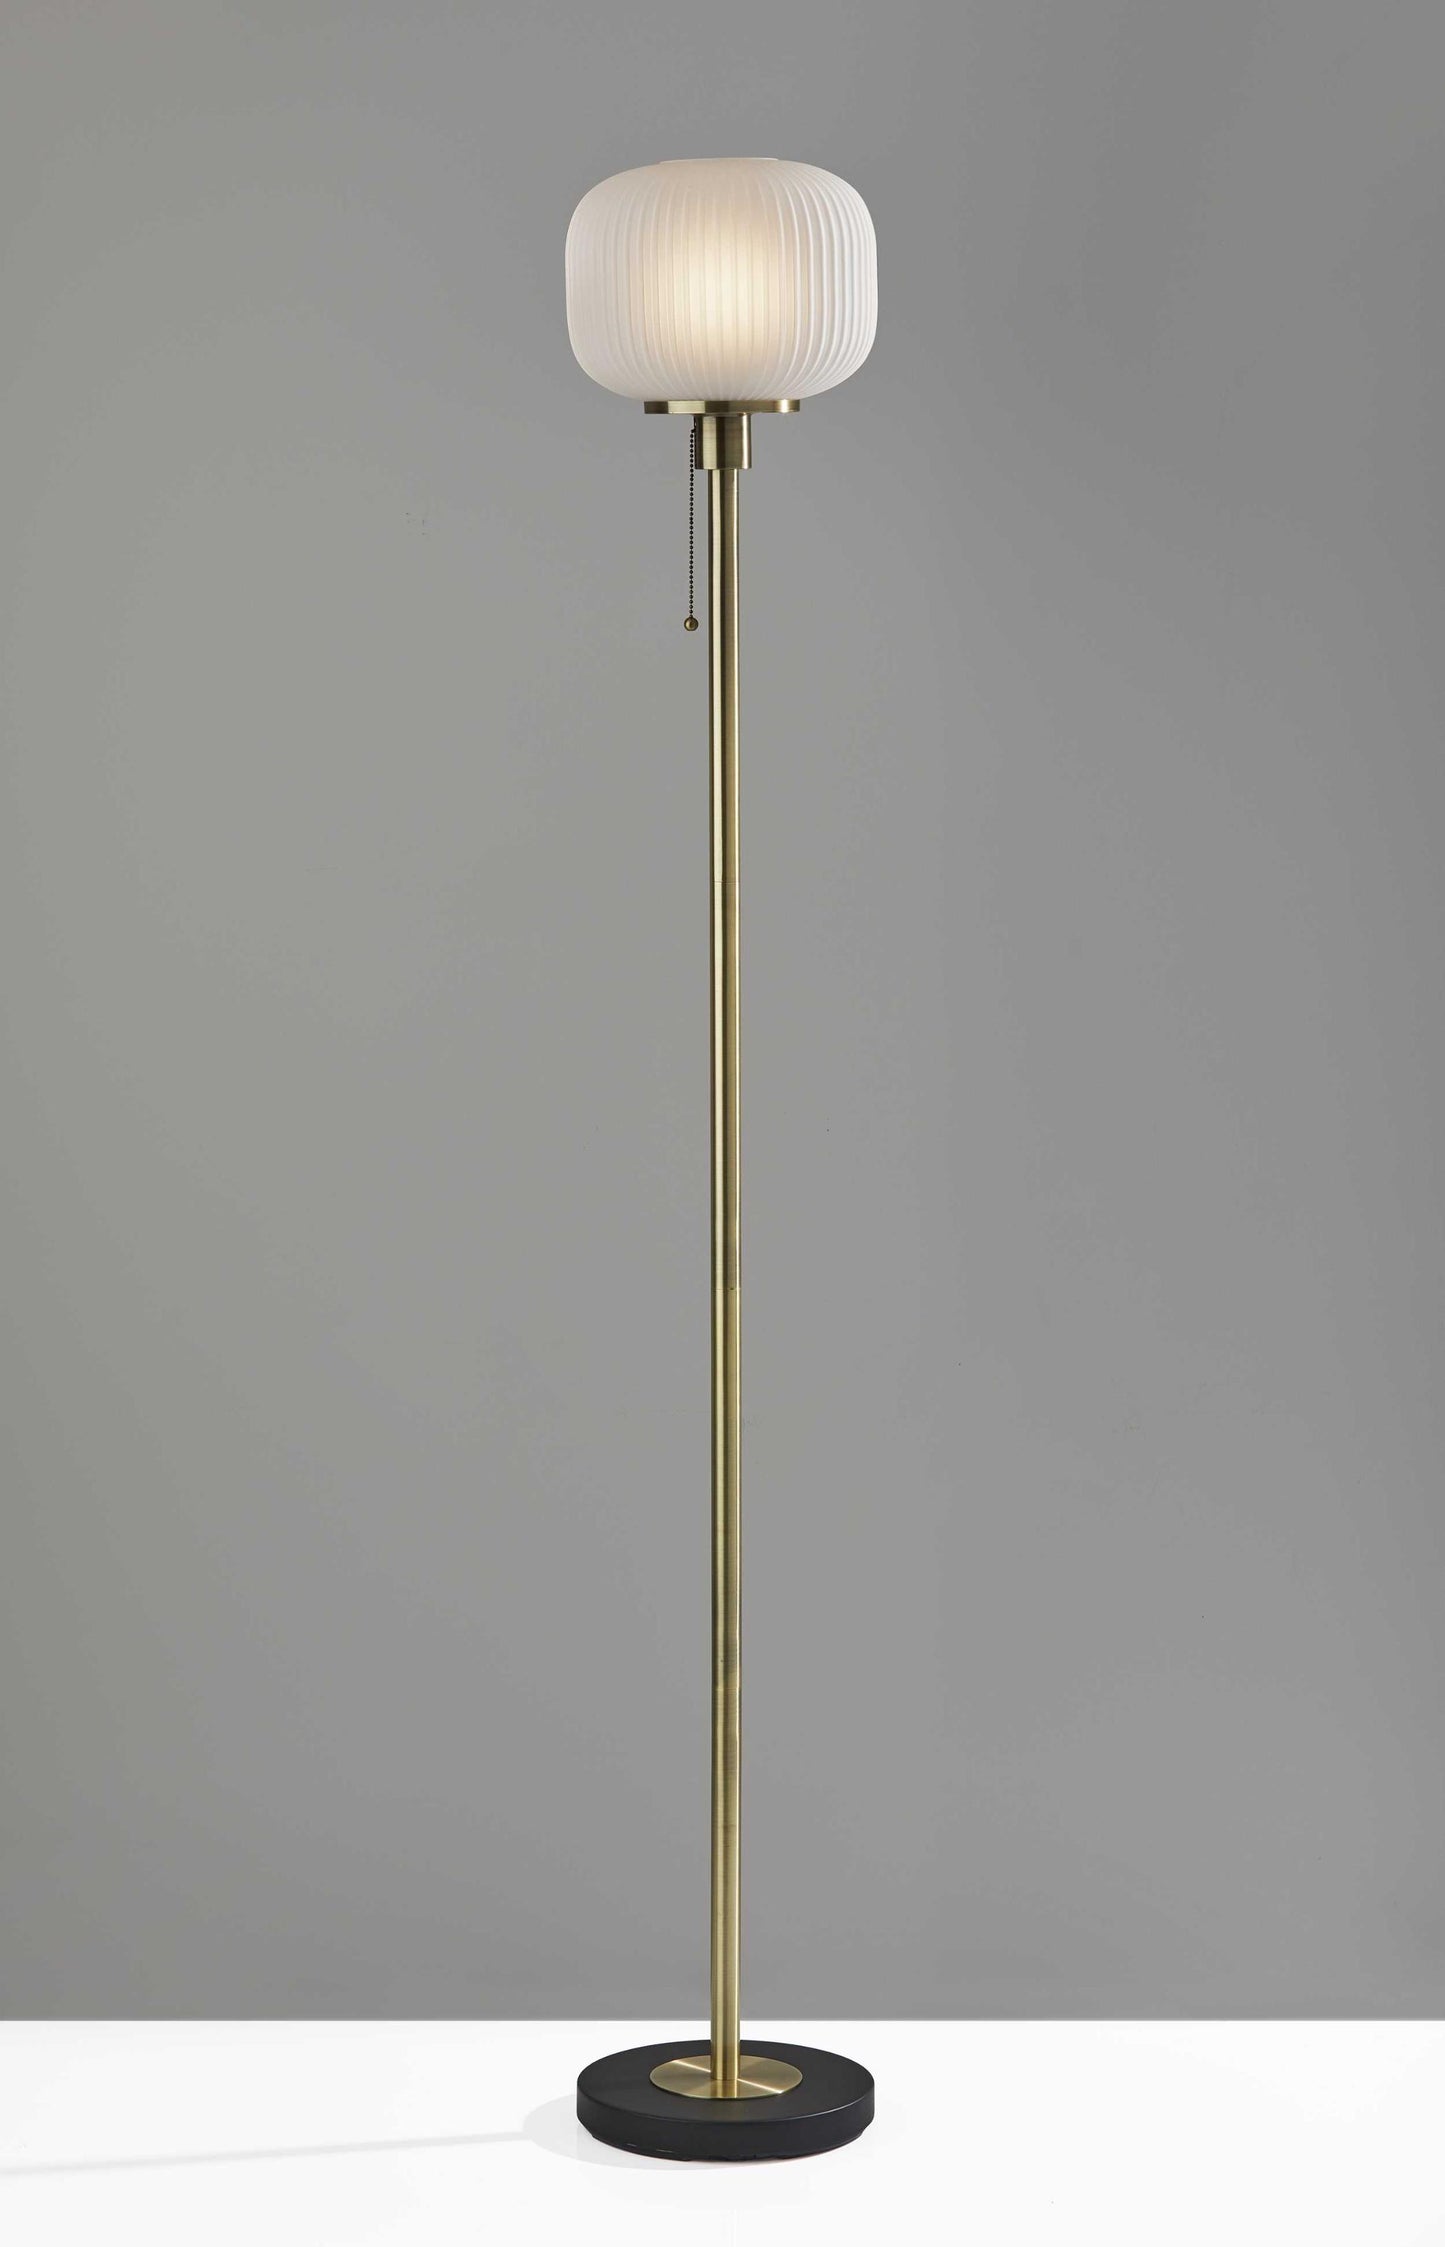 10" X 10" X 65" Antique Brass Glass Metal Floor Lamp